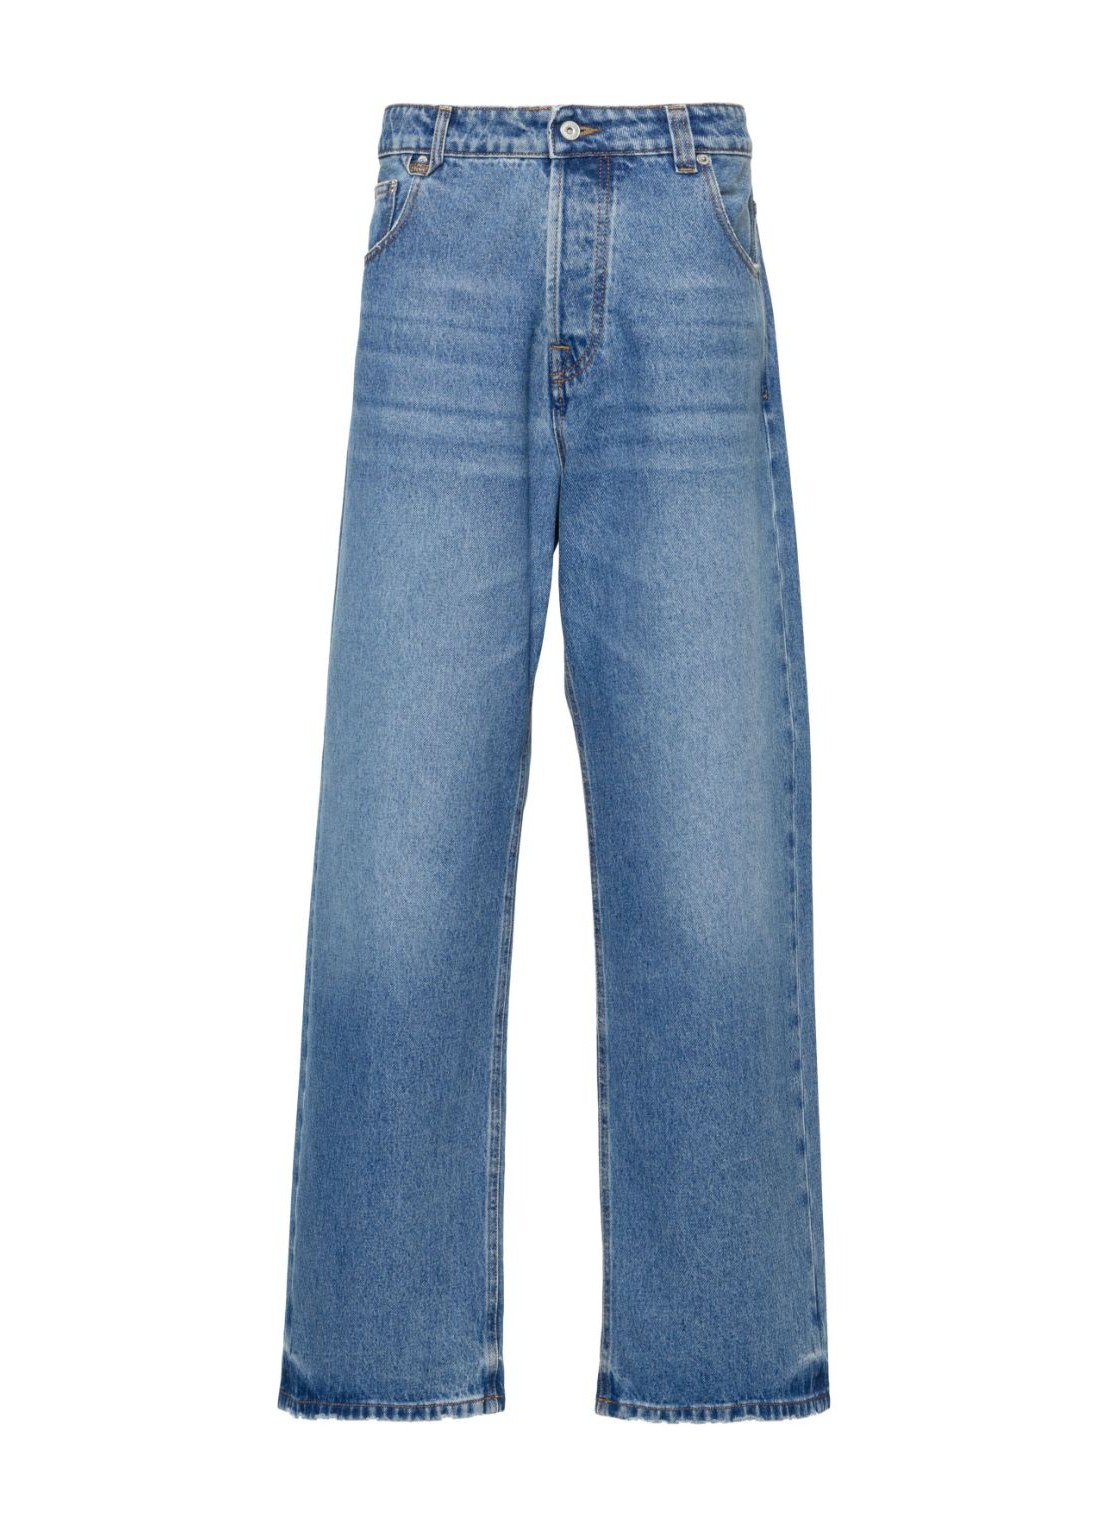 Pantalon jeans jacquemus denim man le de nimes large 24e245de0381513 33c talla 32
 